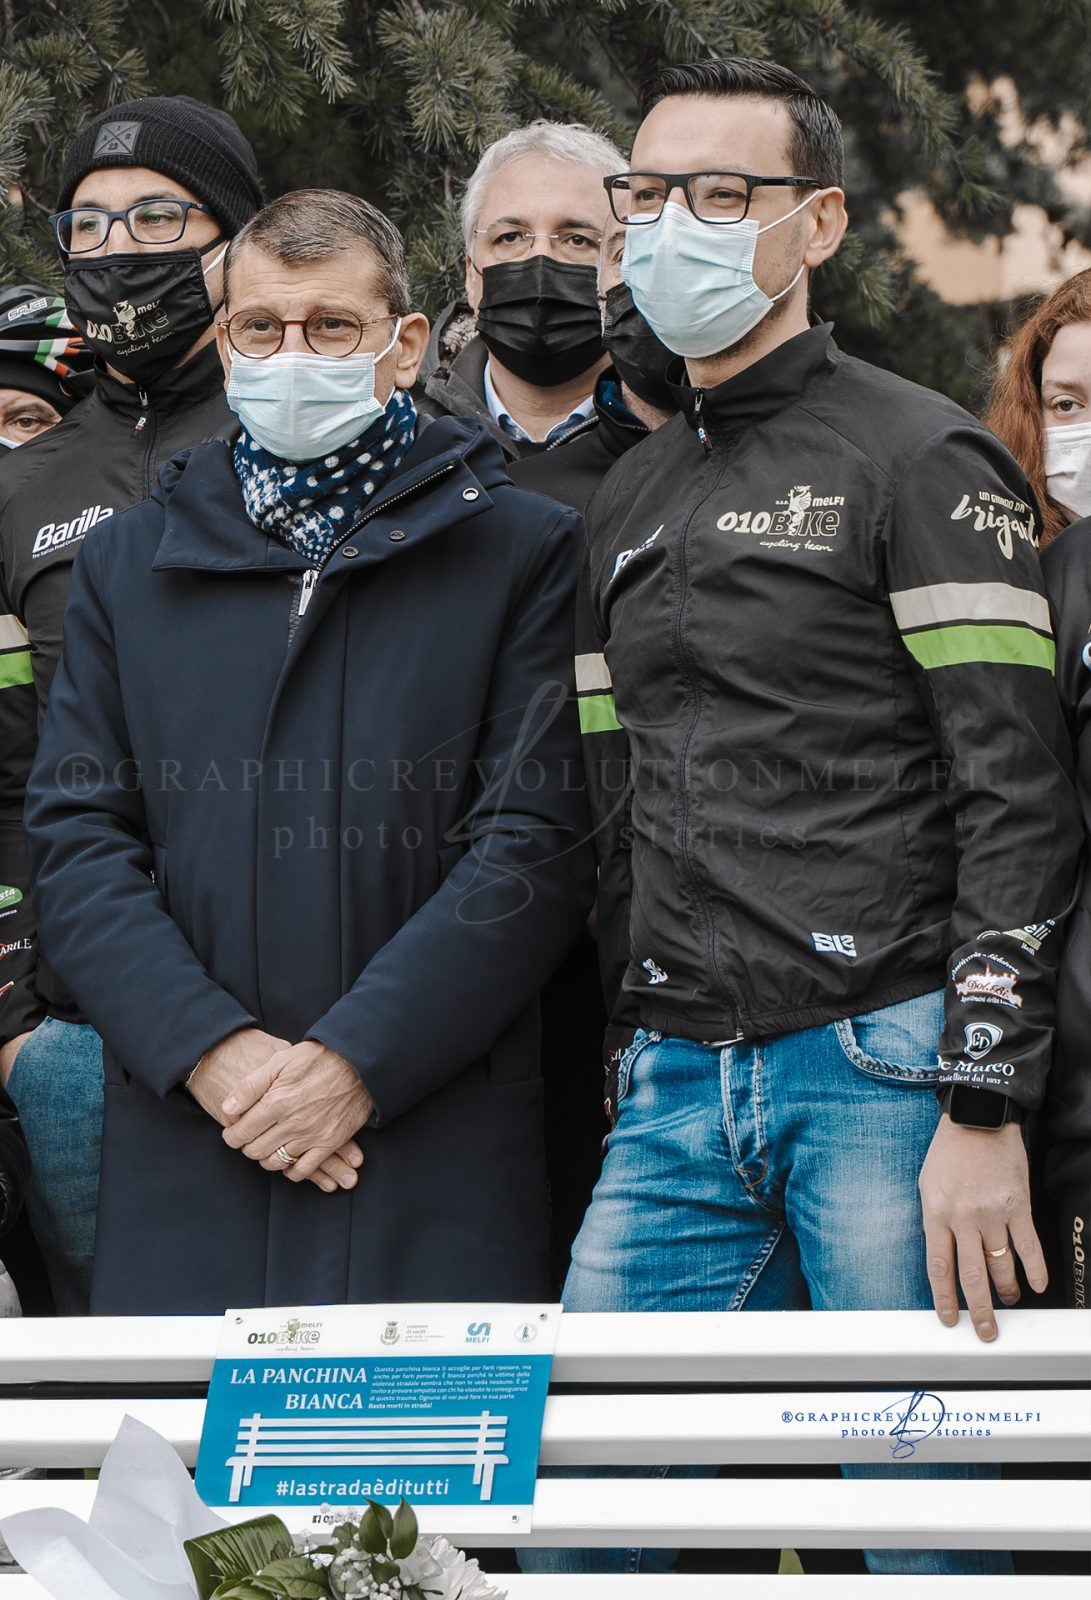 Una panchina bianca a Melfi per le vittime della strada Team 010 bike ciclisti melfi sindaco di melfi giuseppe maglione